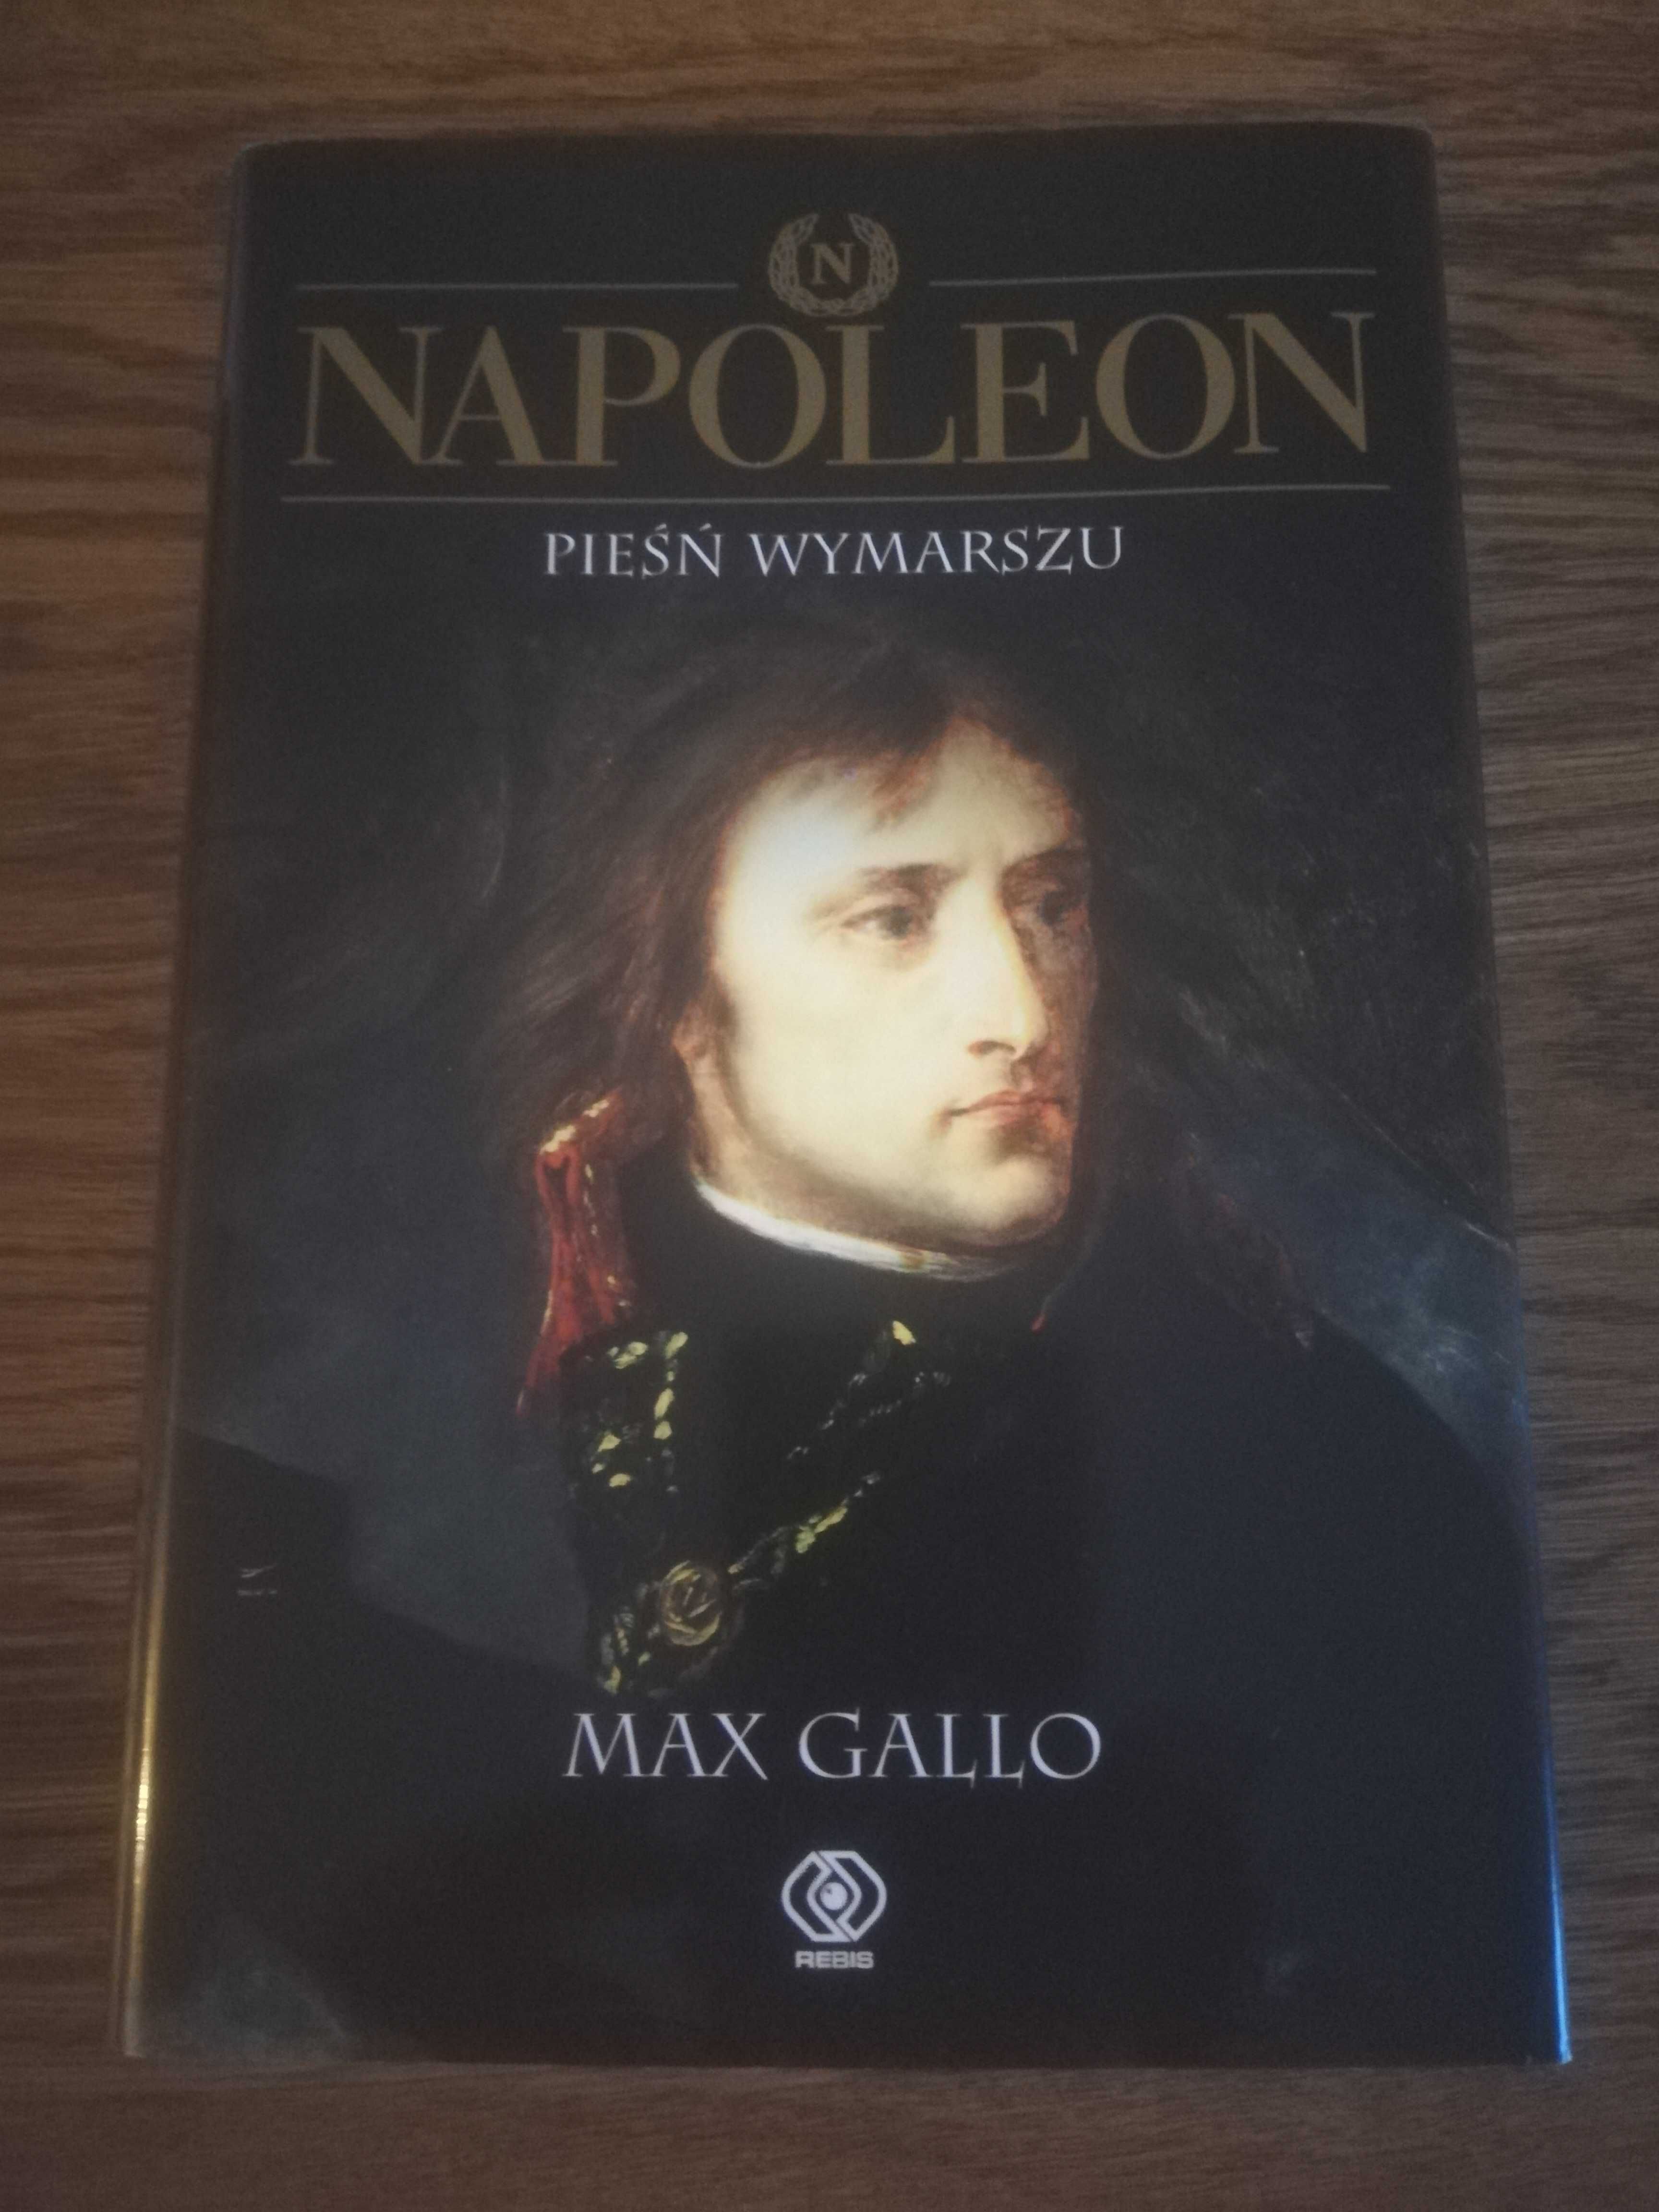 Książka "Napoleon" Pieśni wymarszu Max Gallo